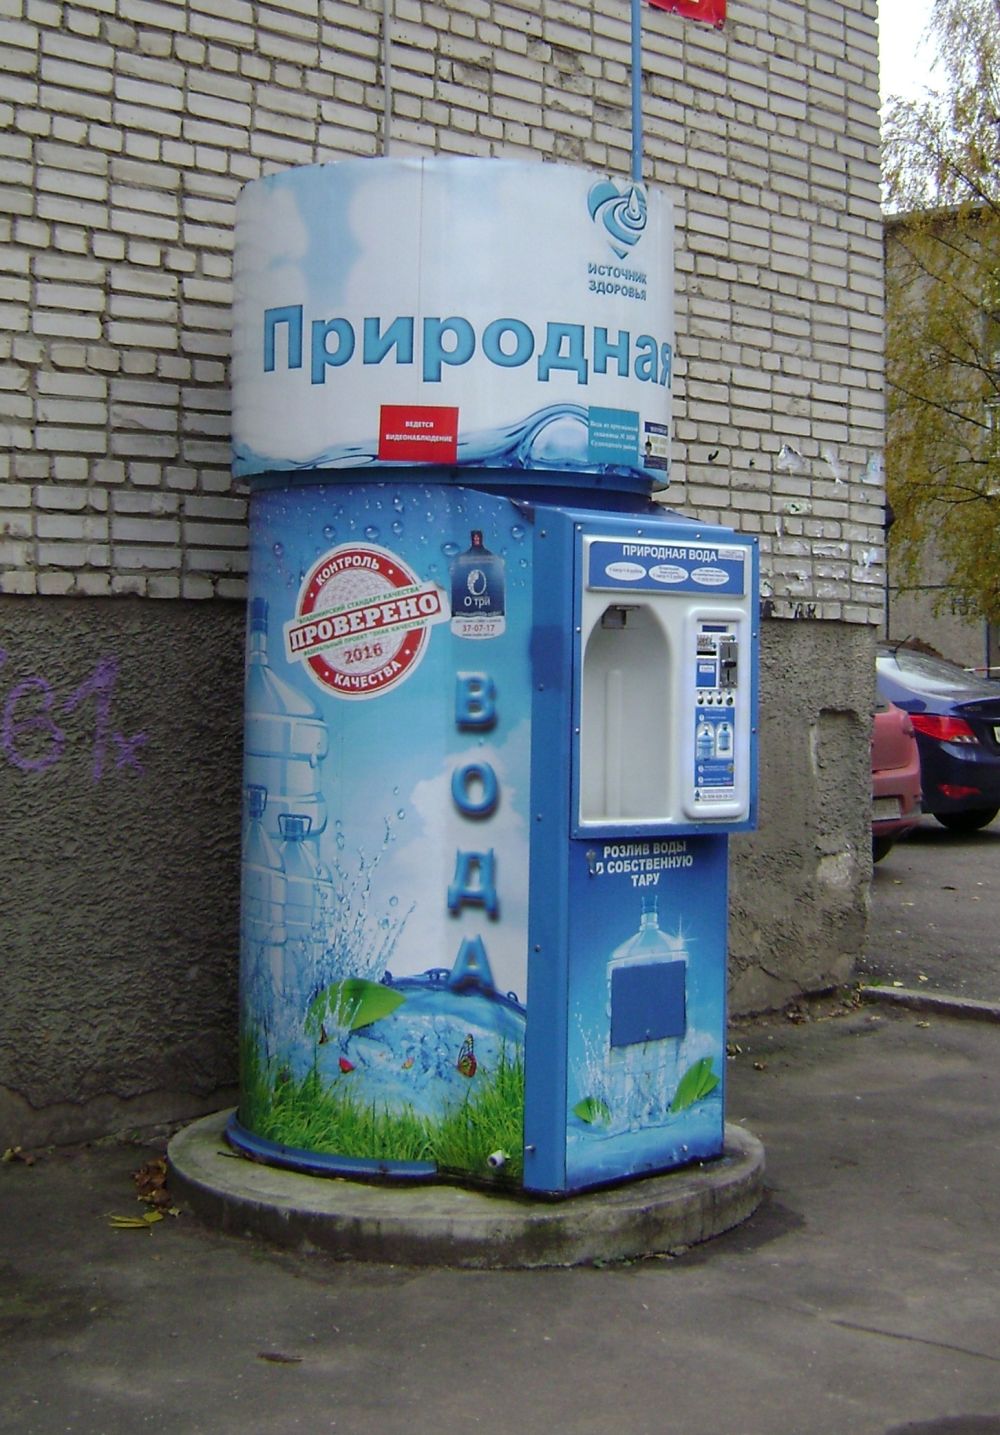 Аппарат продажи воды на улице. Автомат питьевой воды. Автомат с водой. Вендинговый автомат с водой. Уличный автомат с водой.